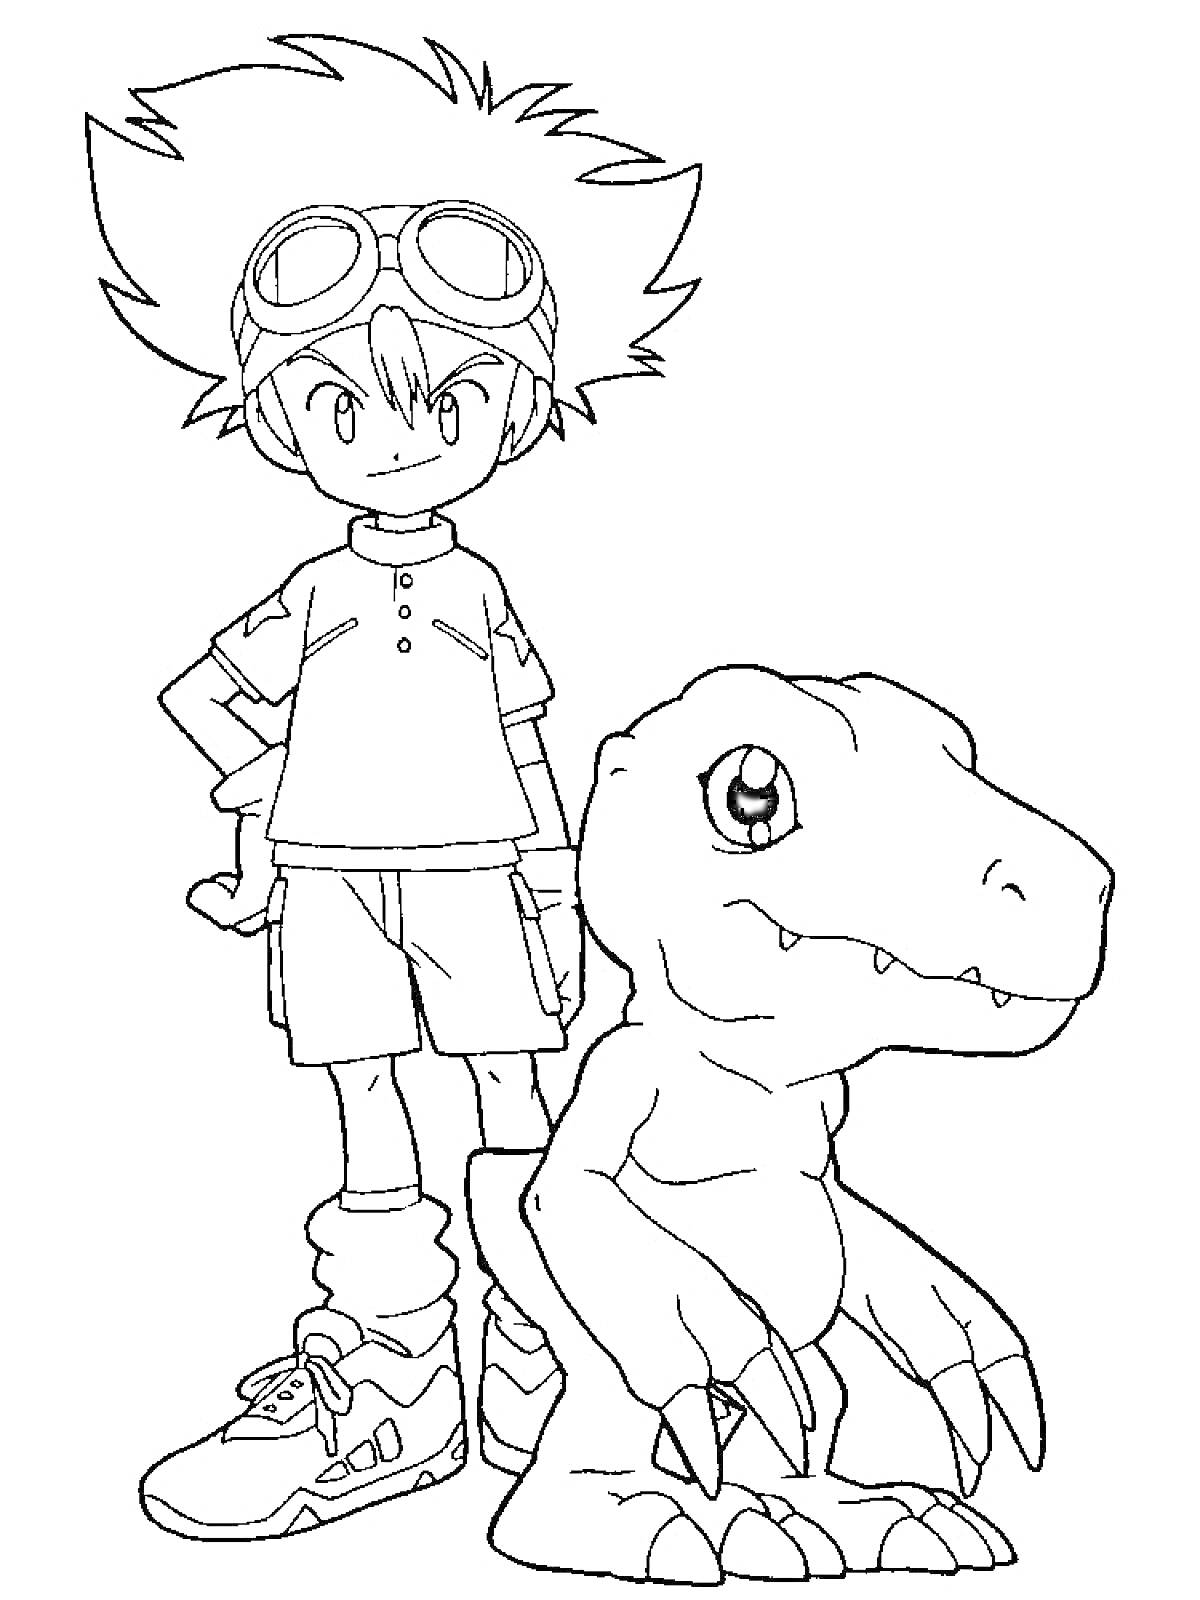 Раскраска Мальчик в очках и шортах с Дигимоном динозавром